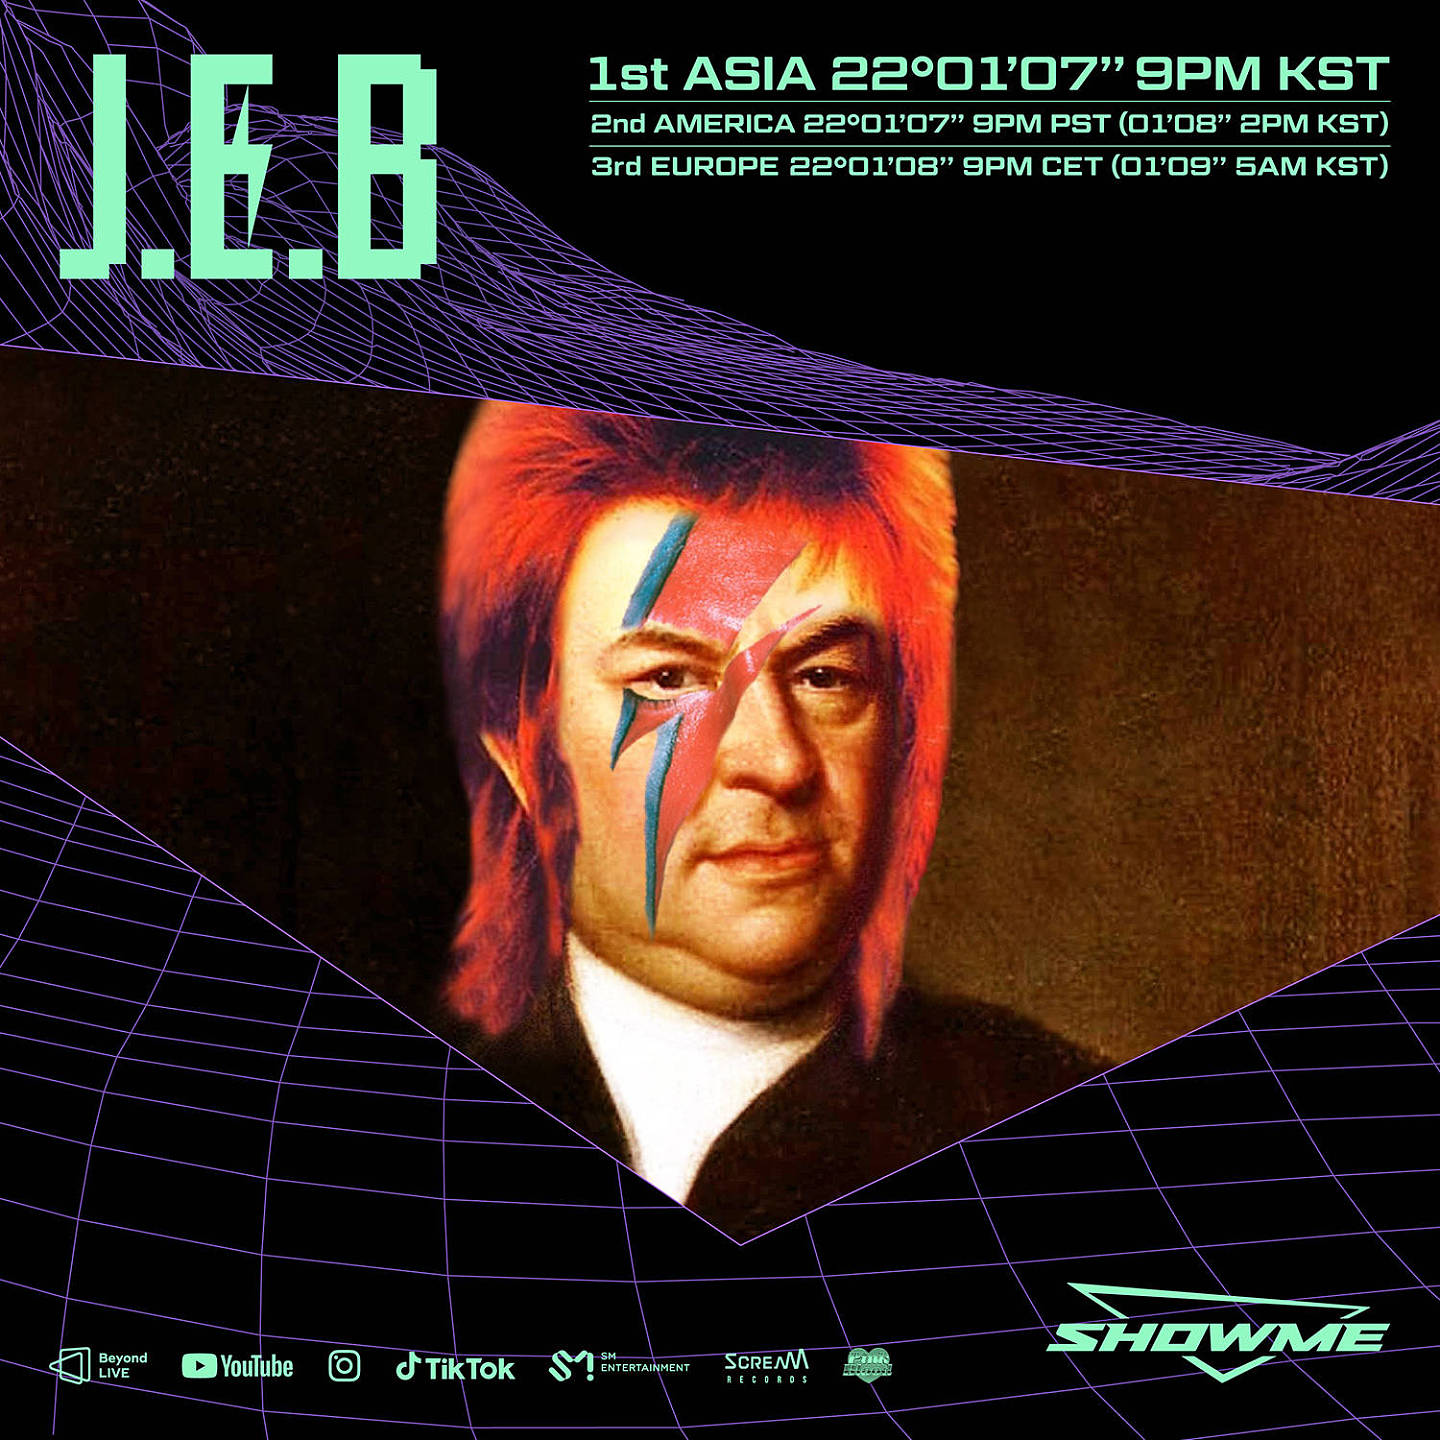 欢快的线上DJing派对！DJ Streaming Show“SHOWME”首位主人公J.E.B今日出击 - 1